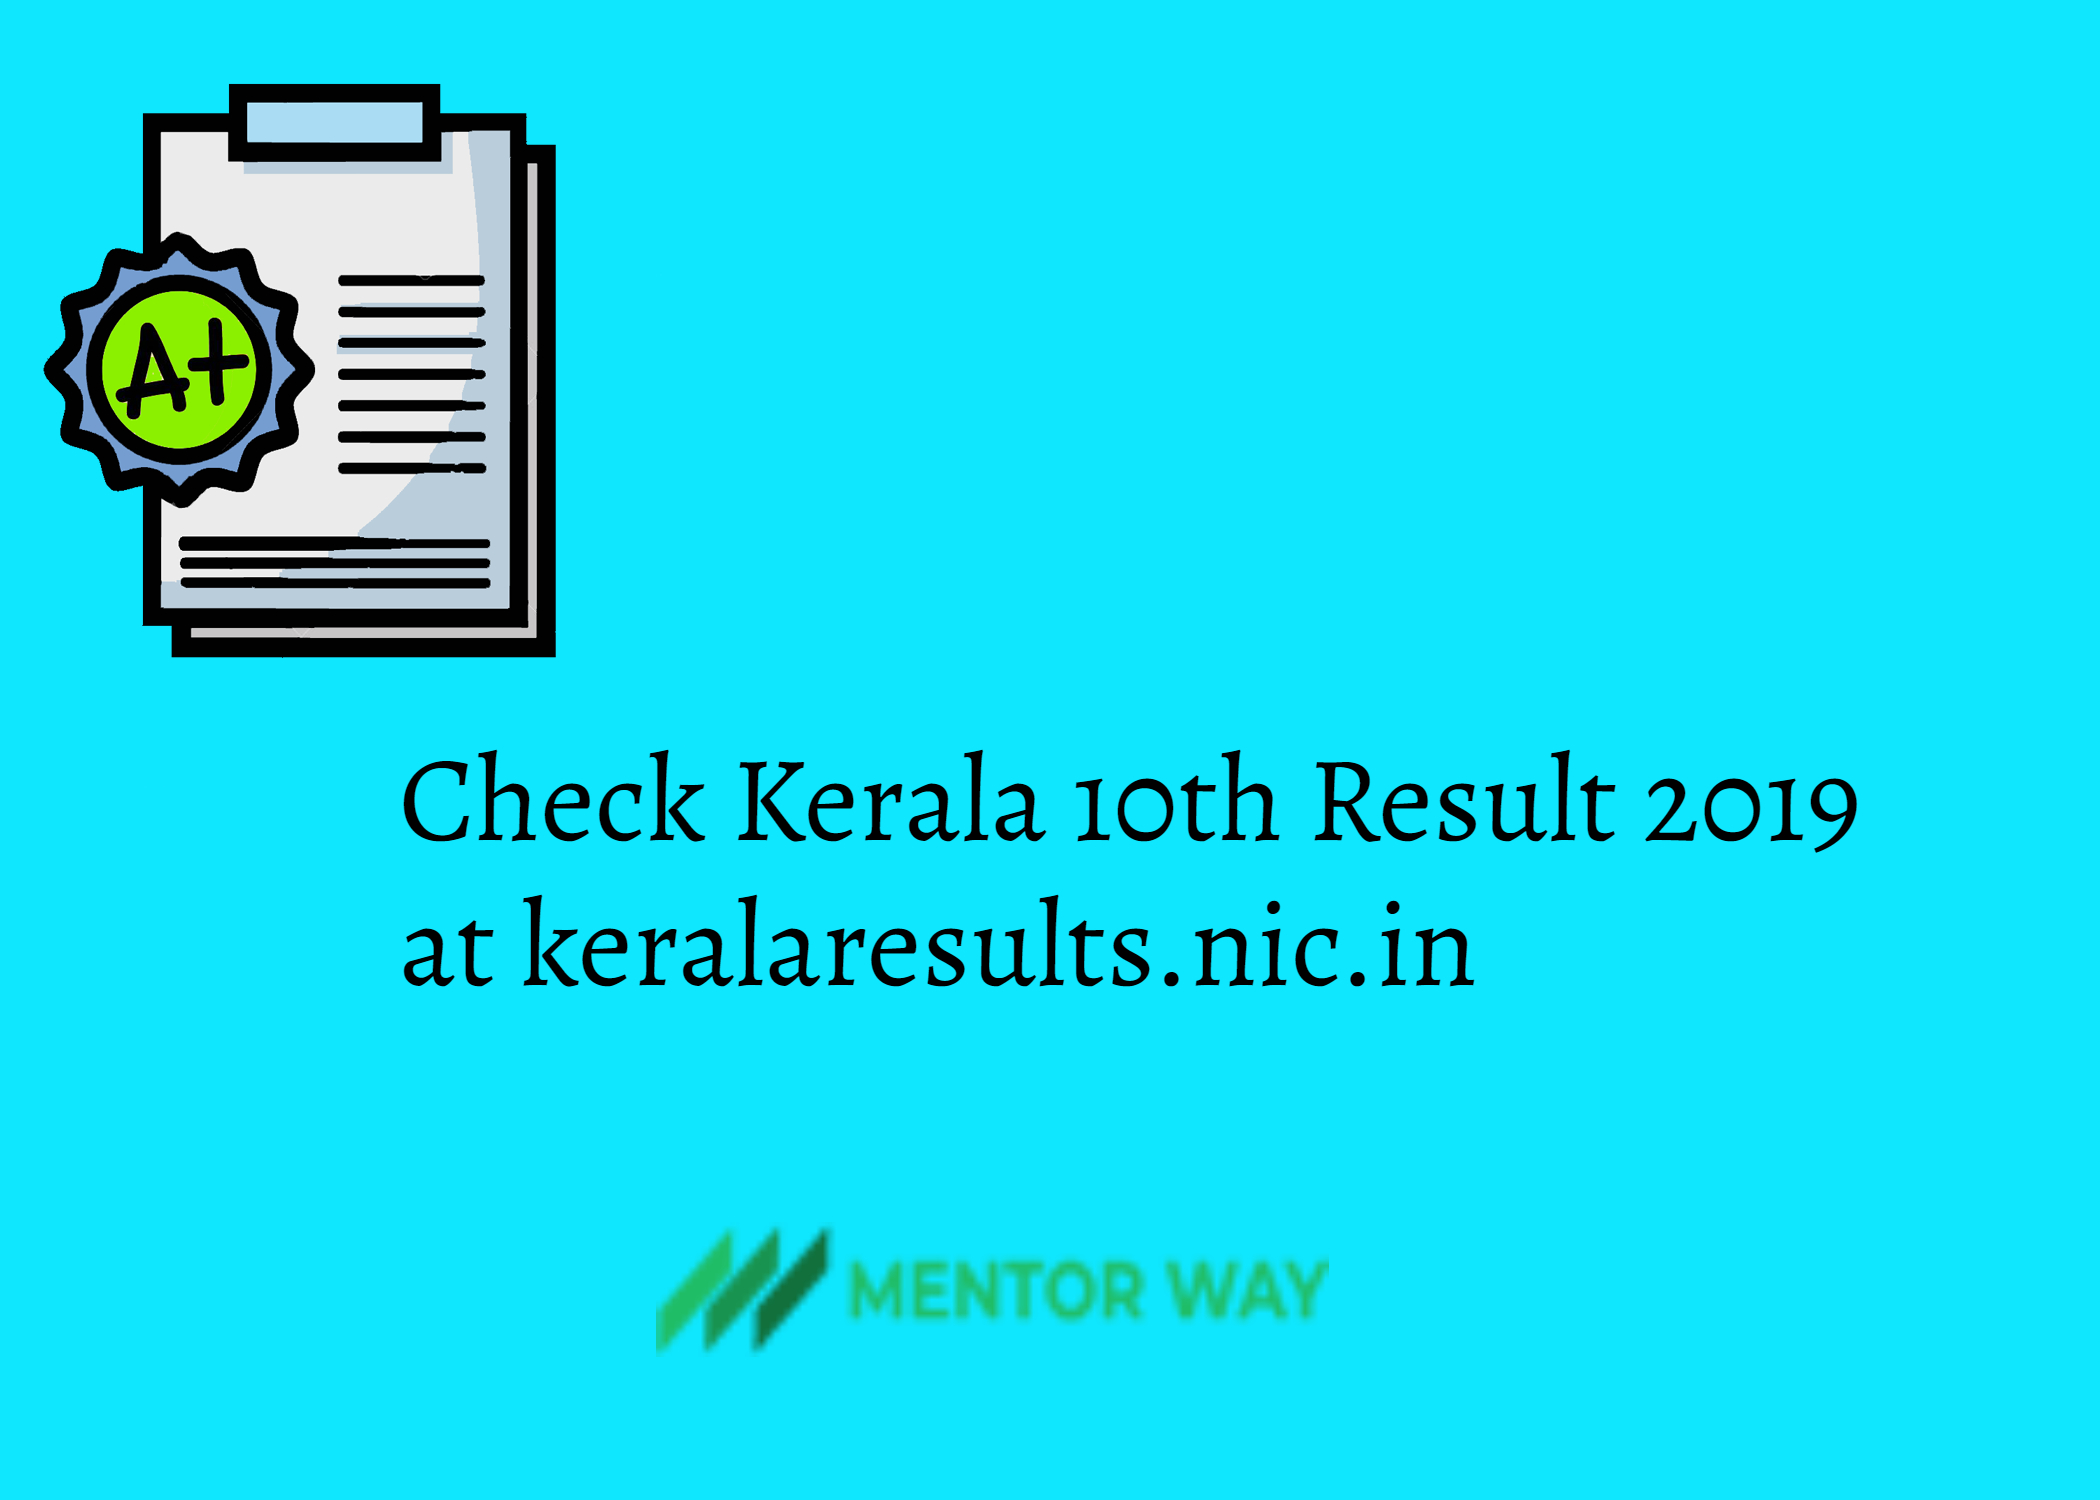 Check Kerala 10th Result 2019 at keralaresults.nic.in